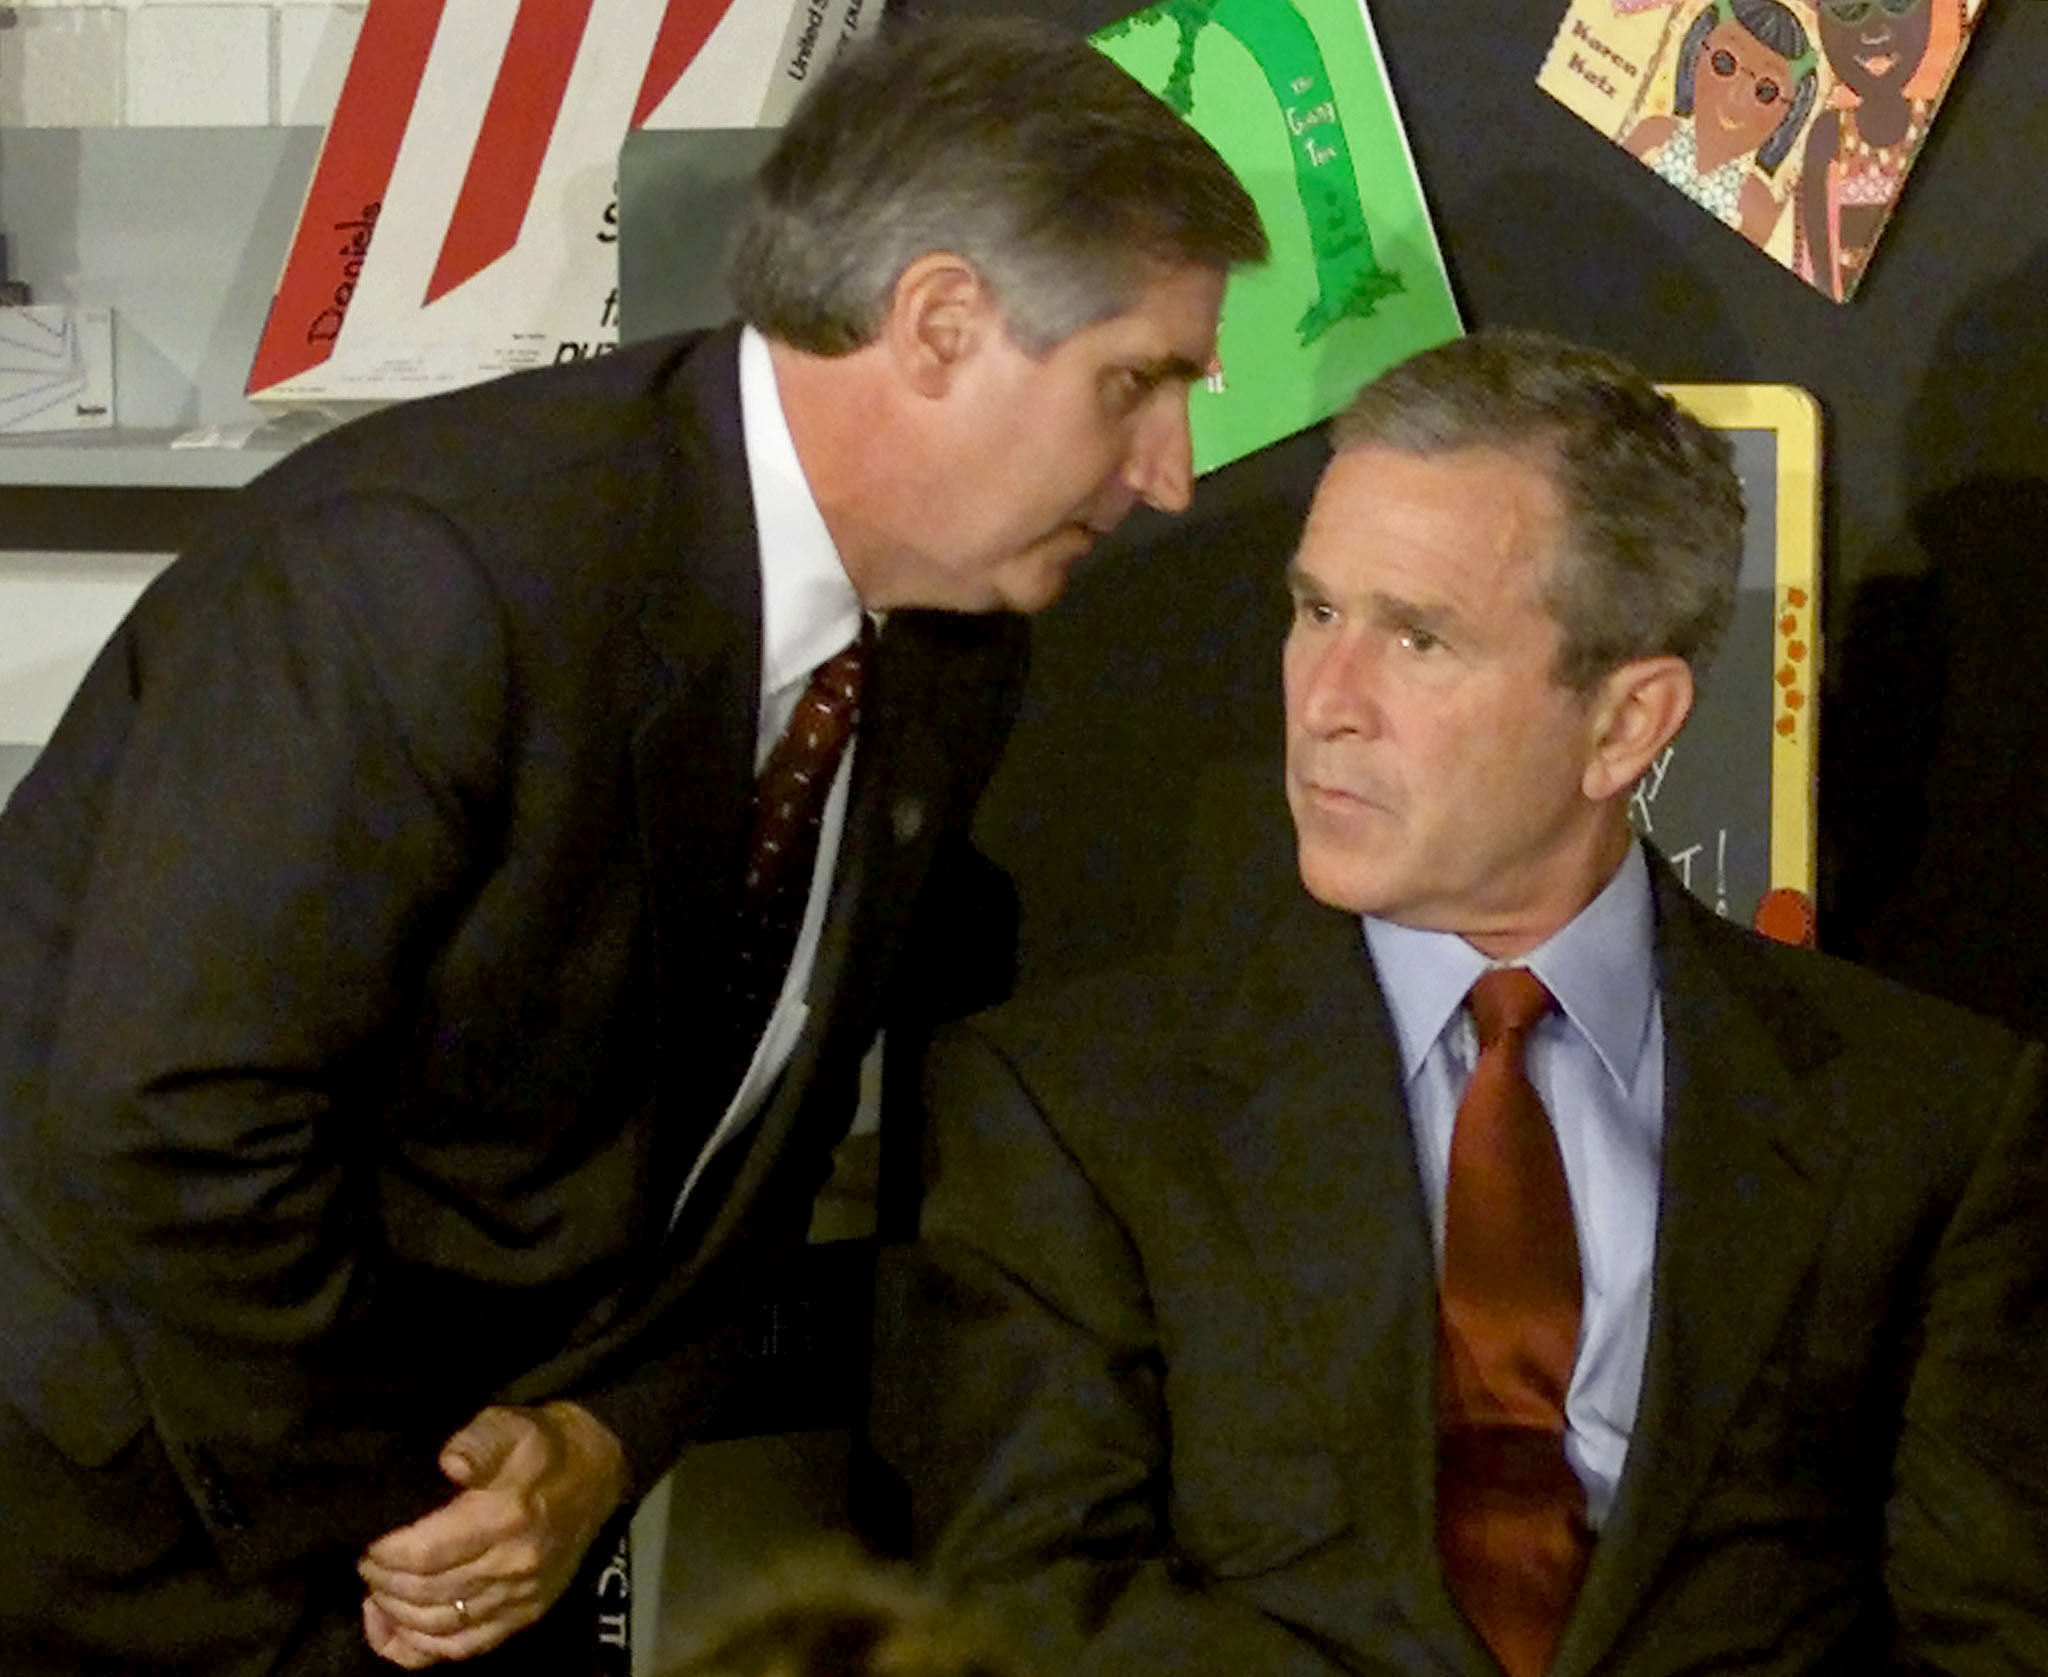 لحظة إبلاغ الرئيس الأميركي السابق جورج دبليو بوش بالهجمات